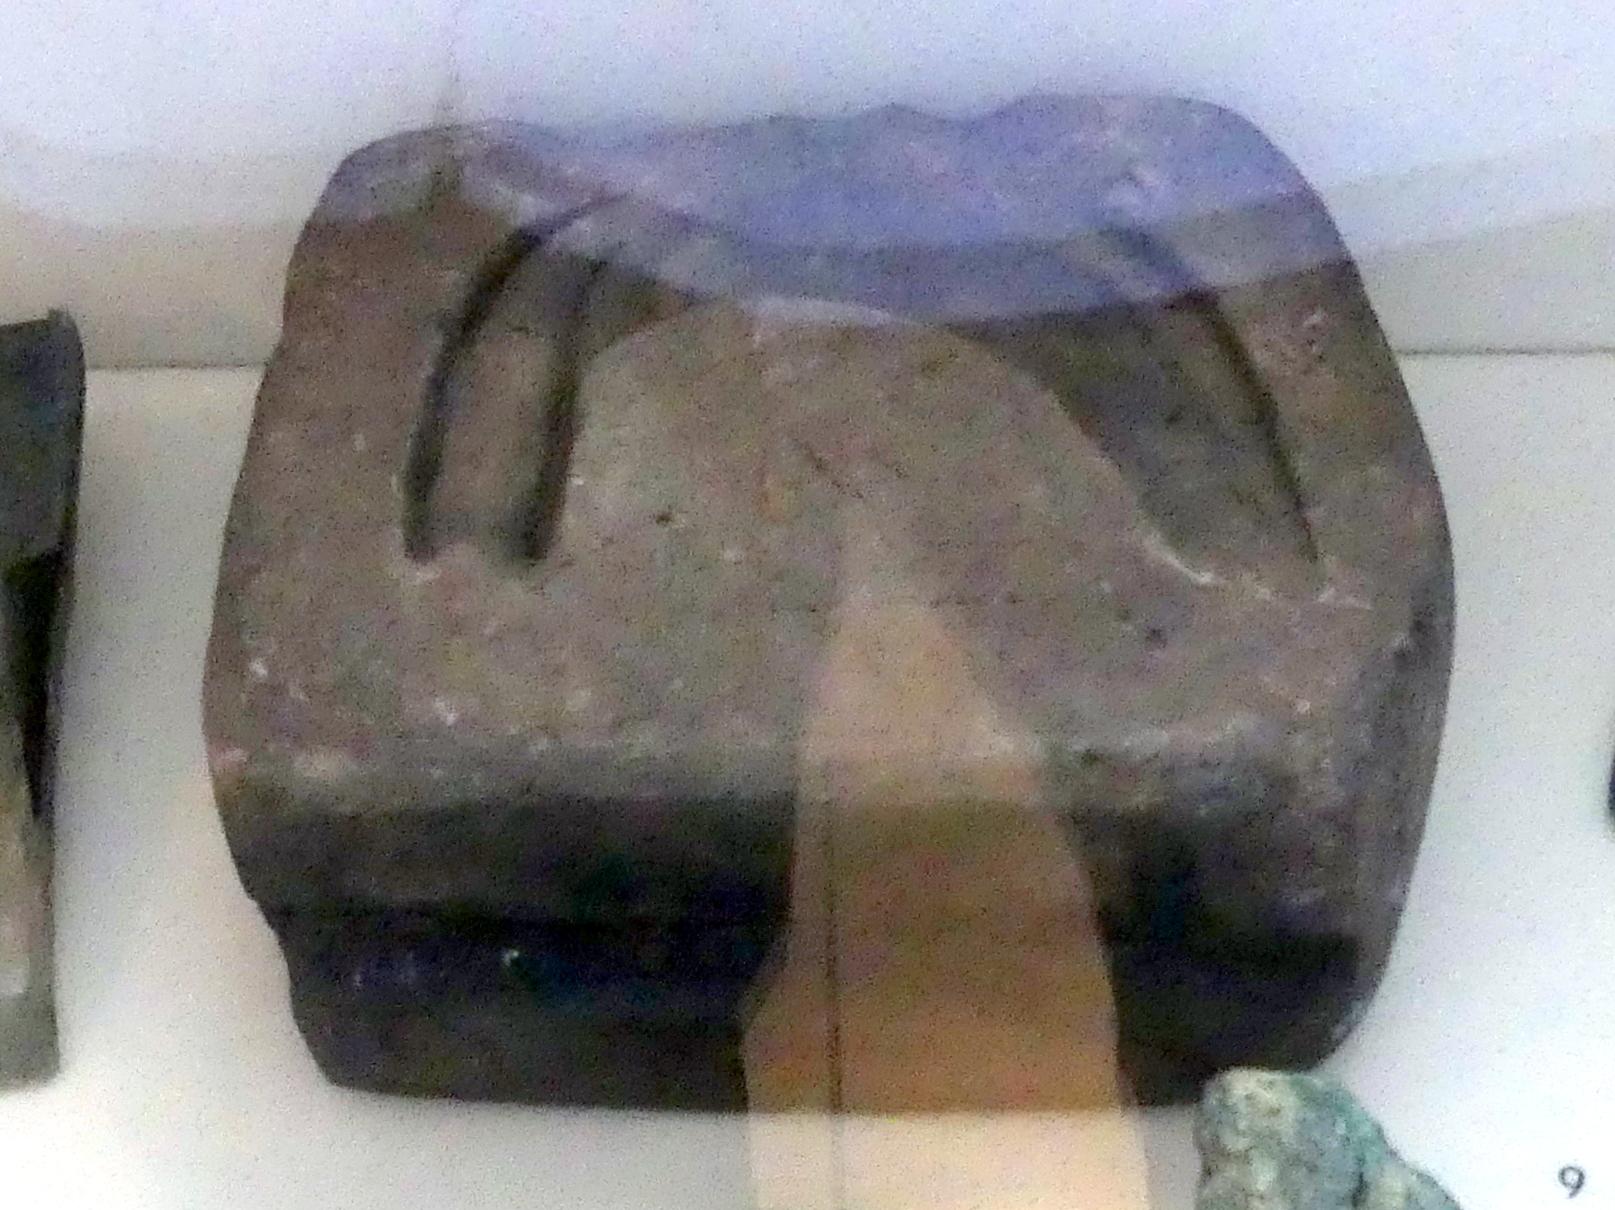 Gußform für Sicheln, Urnenfelderzeit, 1400 - 700 v. Chr., 1200 - 800 v. Chr.